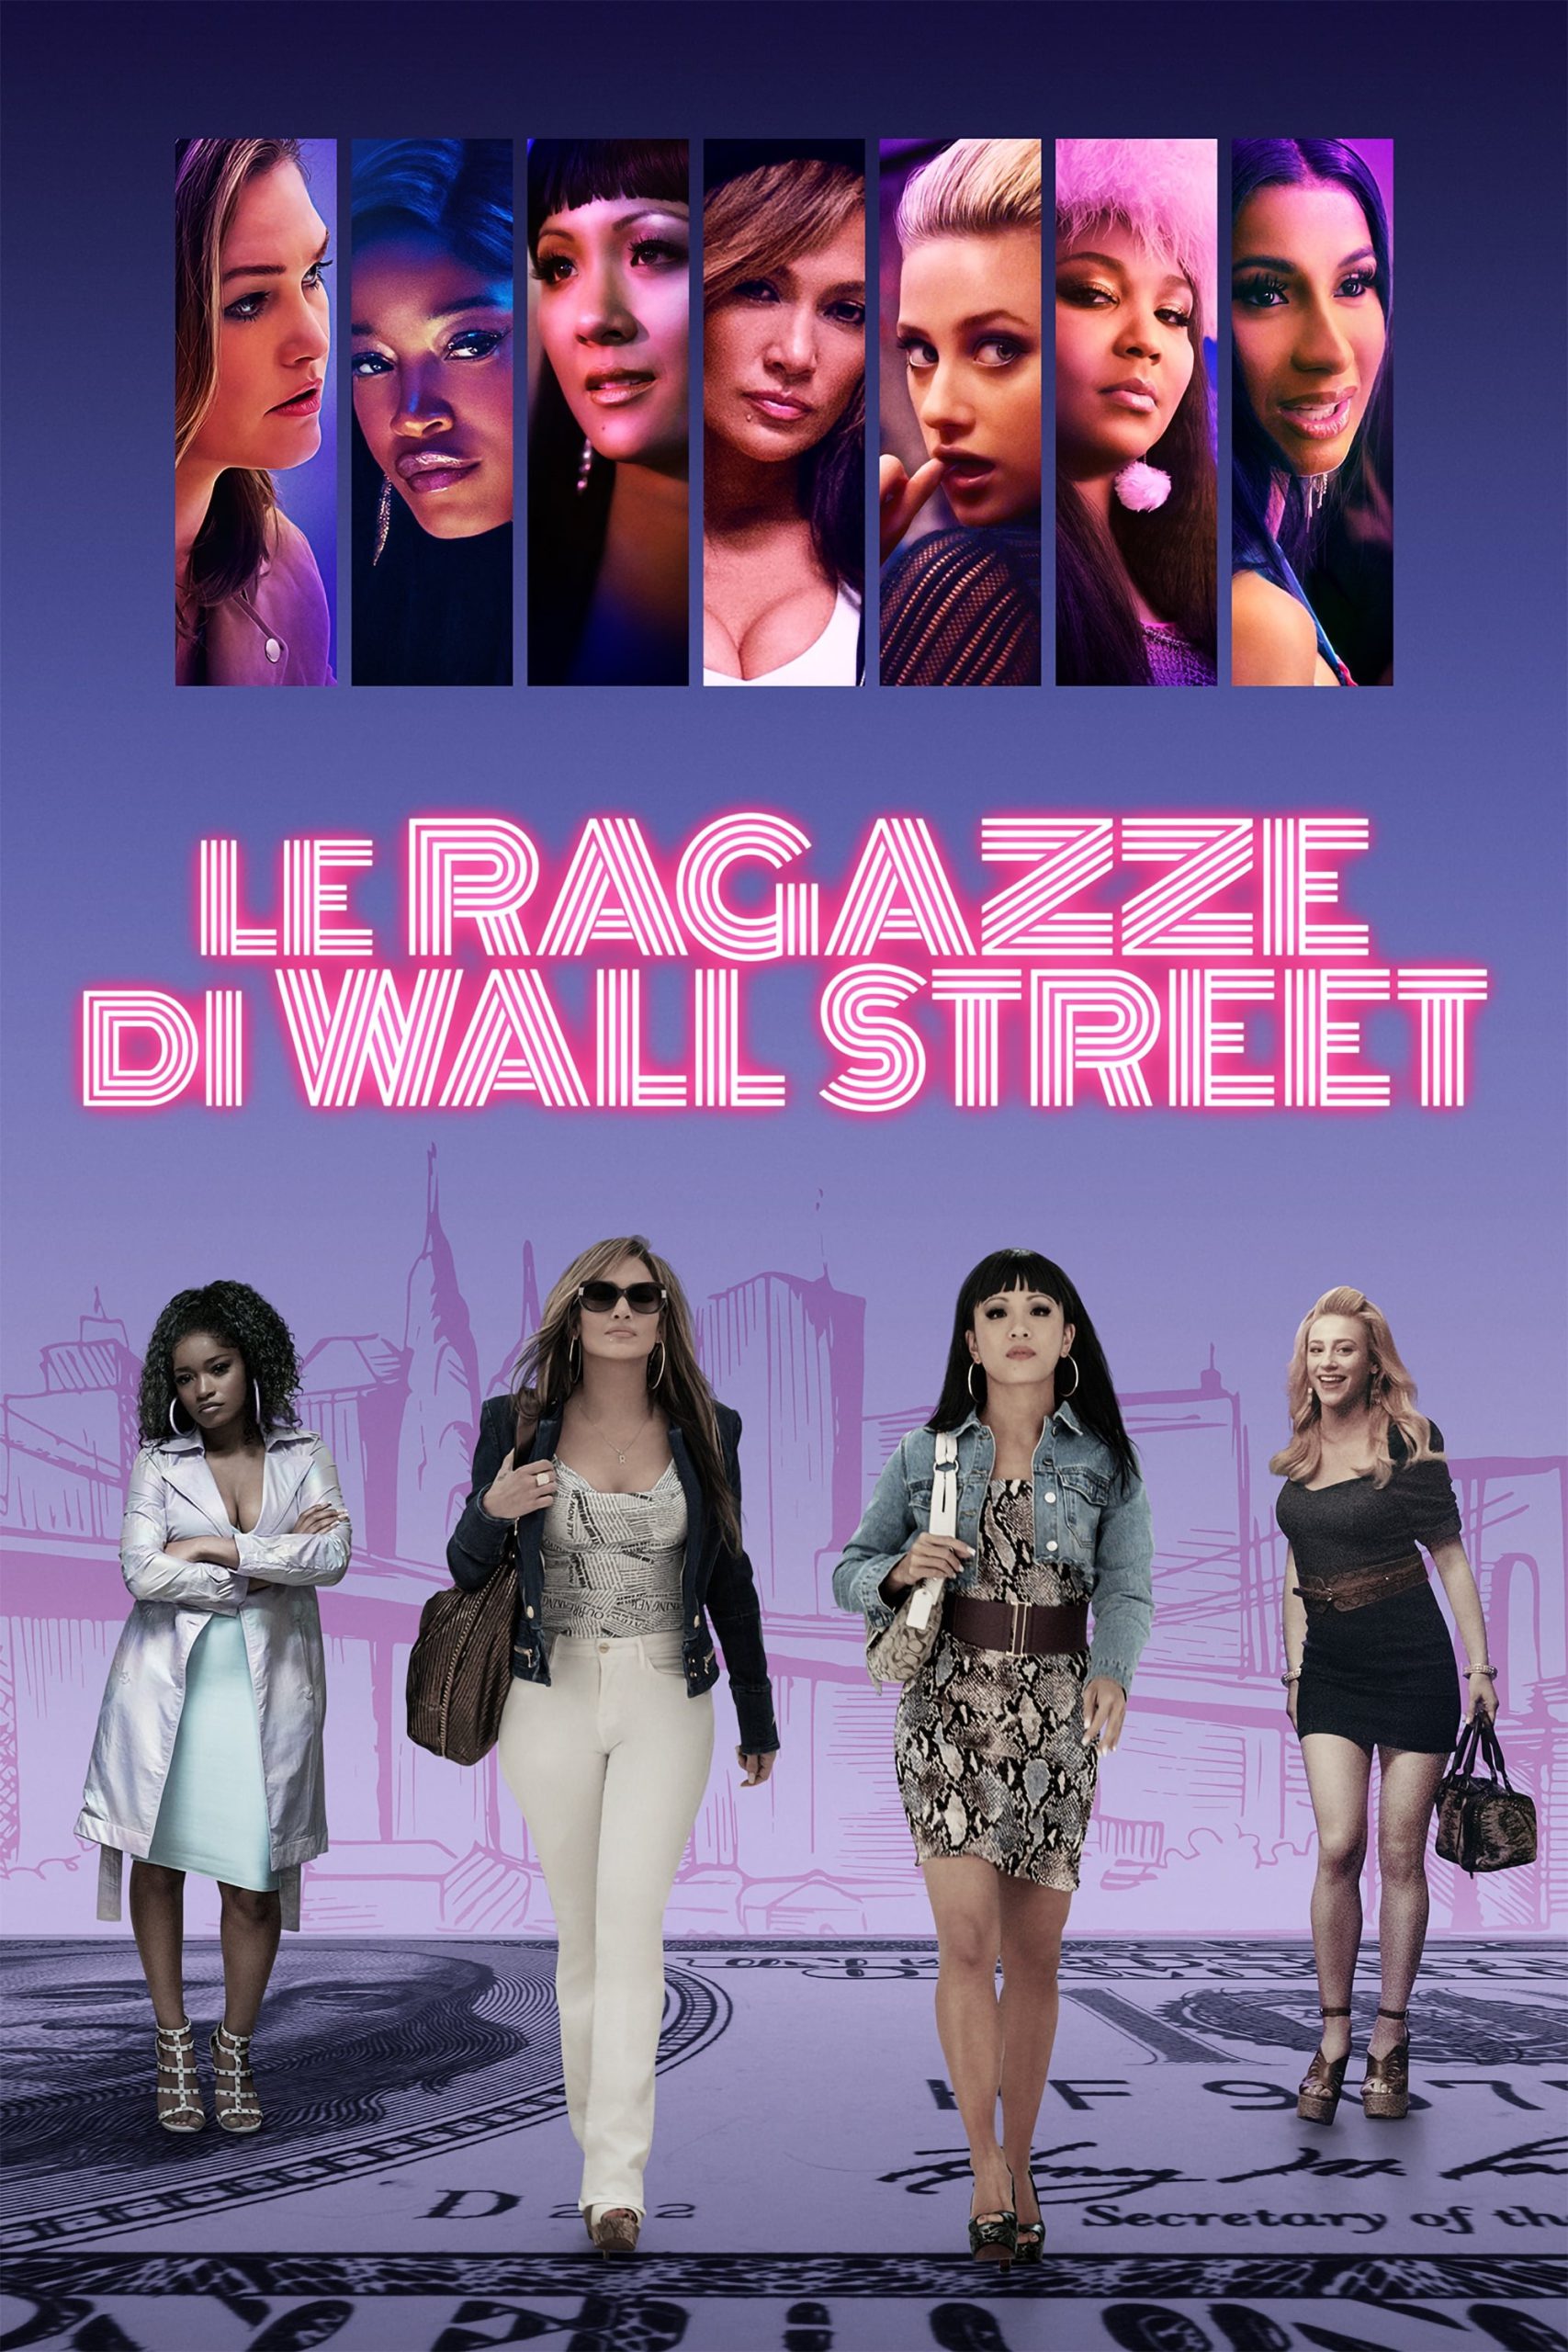 Le ragazze di Wall Street [HD] (2019)